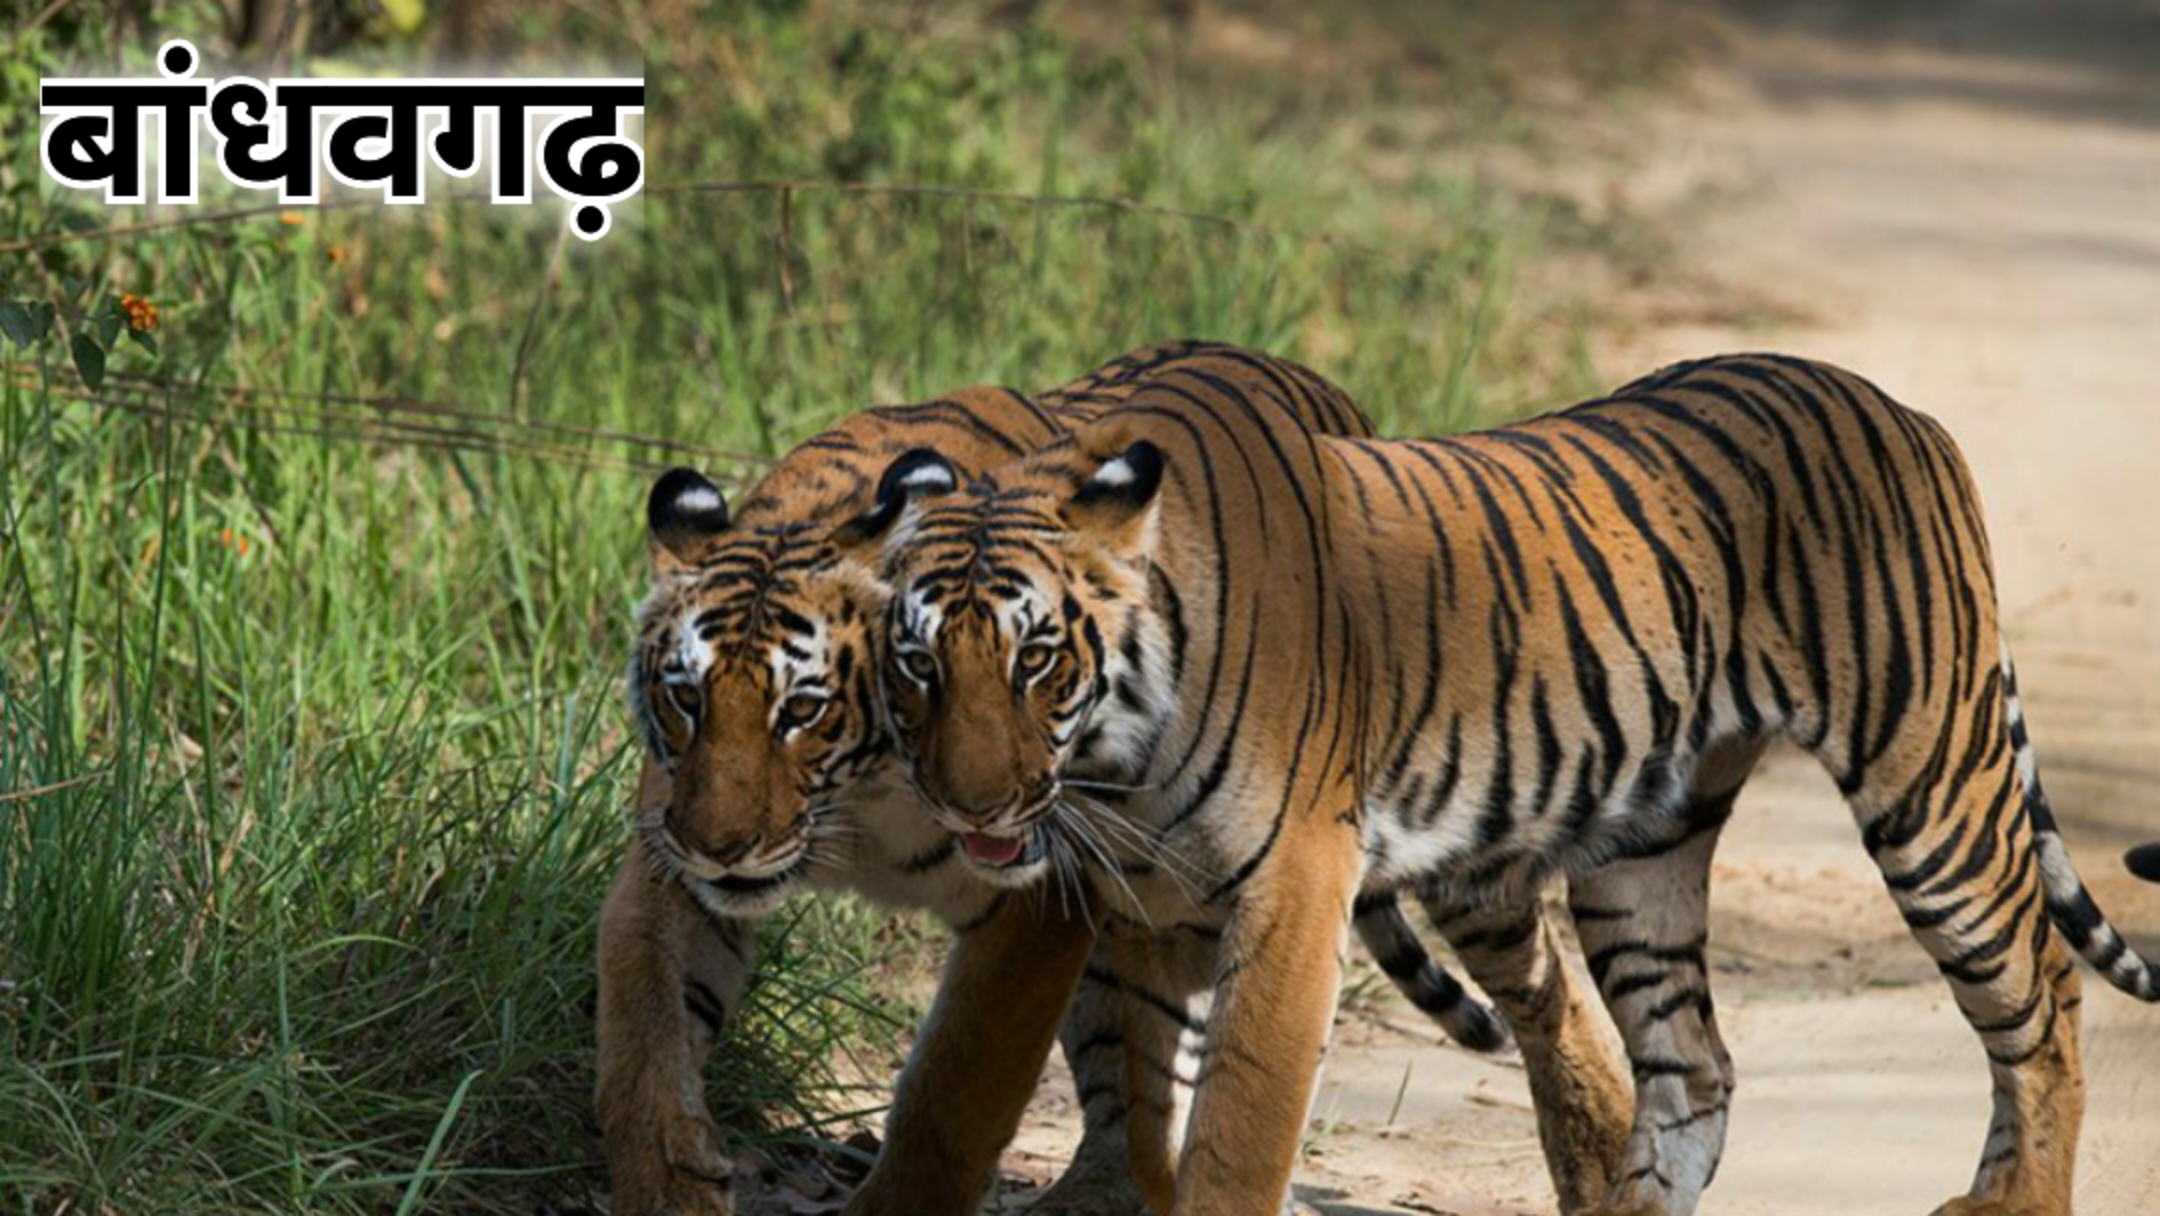 bandhavgarh national park: कई लोगों का मानना होता है कि हनीमून में सुकून और शांति वाली जगह हो. अगर आपके पार्टनर को वन्य जीवों से प्यार है, तो आप बांधवगढ़ नेशनल पार्क जा सकते हैं. यहां आपको बाघ आसानी से दिख जाता है, इसलिए एनिमल लवर्स को यह जगह खूब पसंद आती है. यह मध्यप्रदेश का एक ऐसा राष्ट्रीय उद्यान है जो 32 पहाड़ियों से घिरा है. यह मध्य प्रदेश के उमरिया जिले में स्थित है.